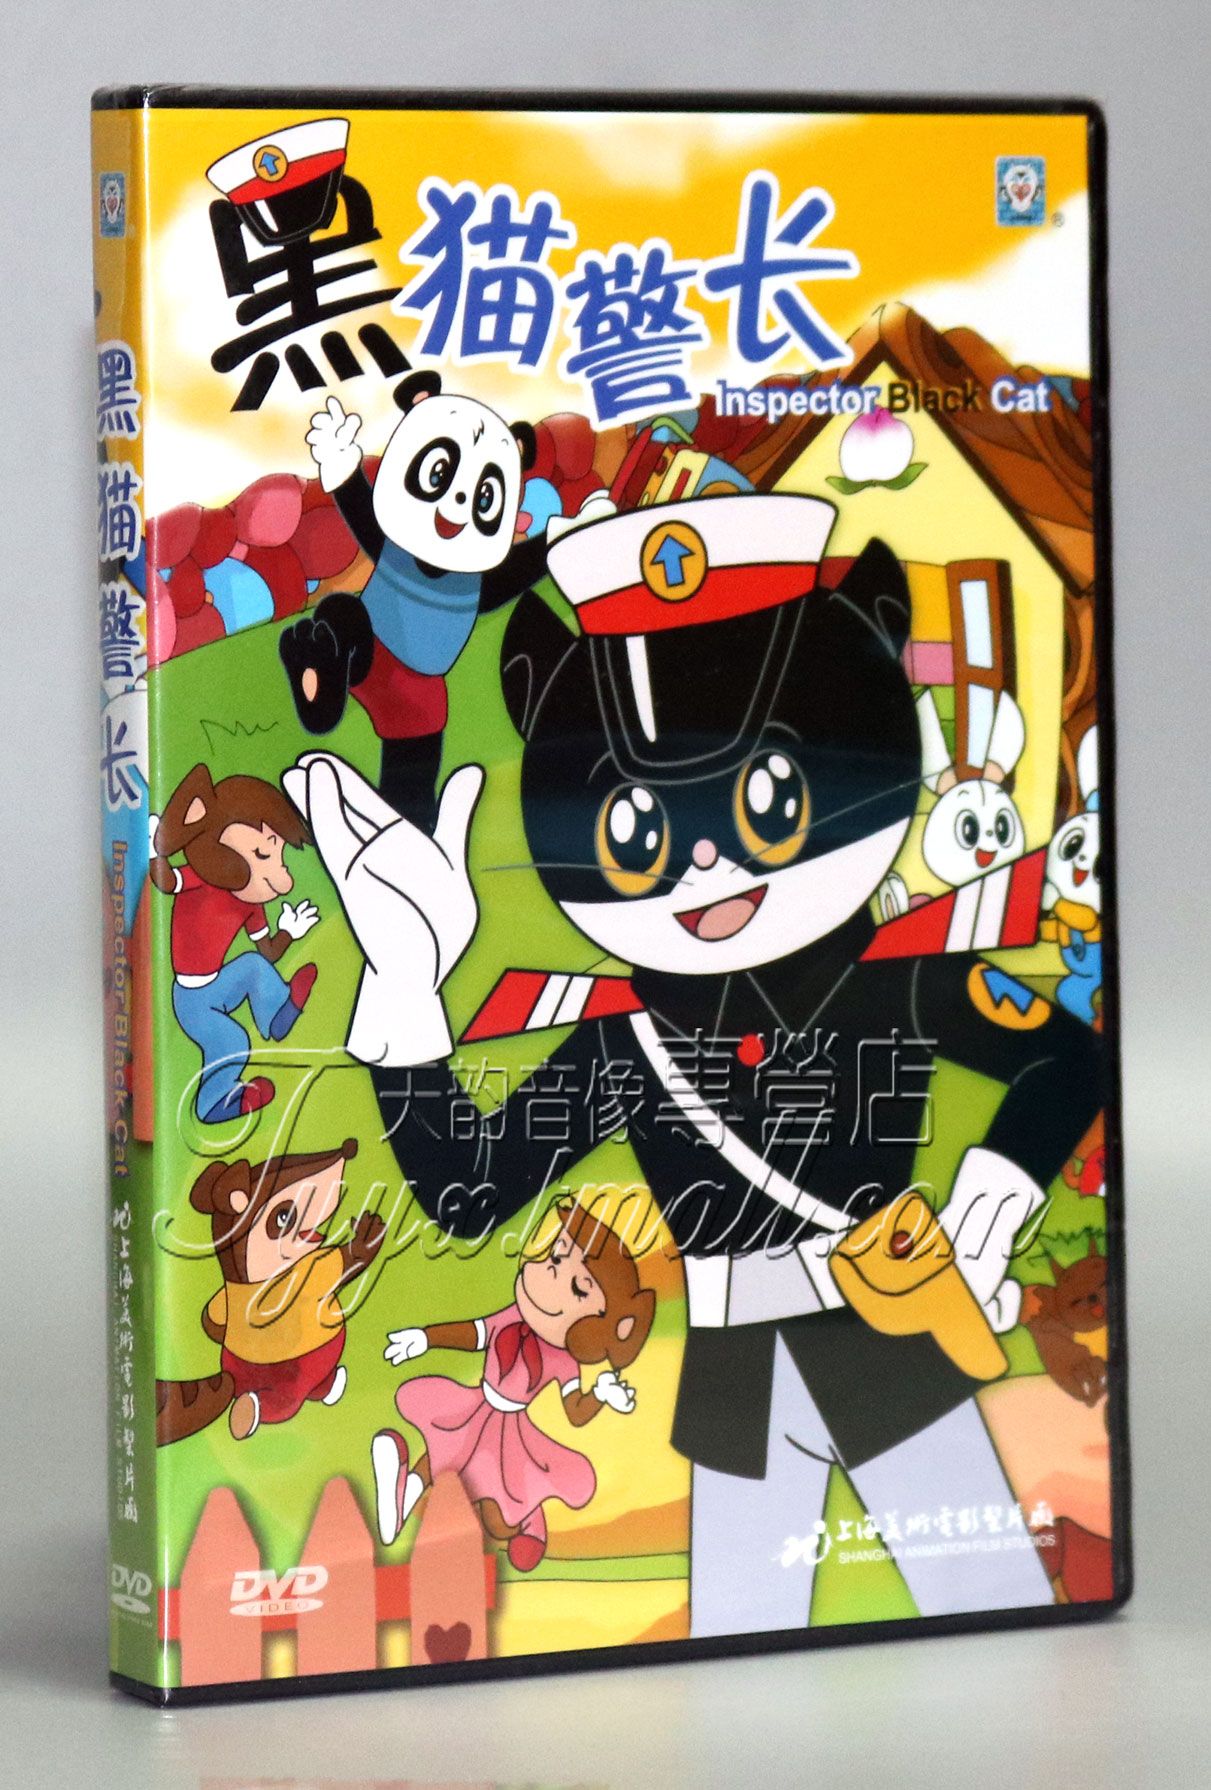 正版 黑猫警长 盒装 DVD全集光盘 上海美术经典动画片DVD碟片